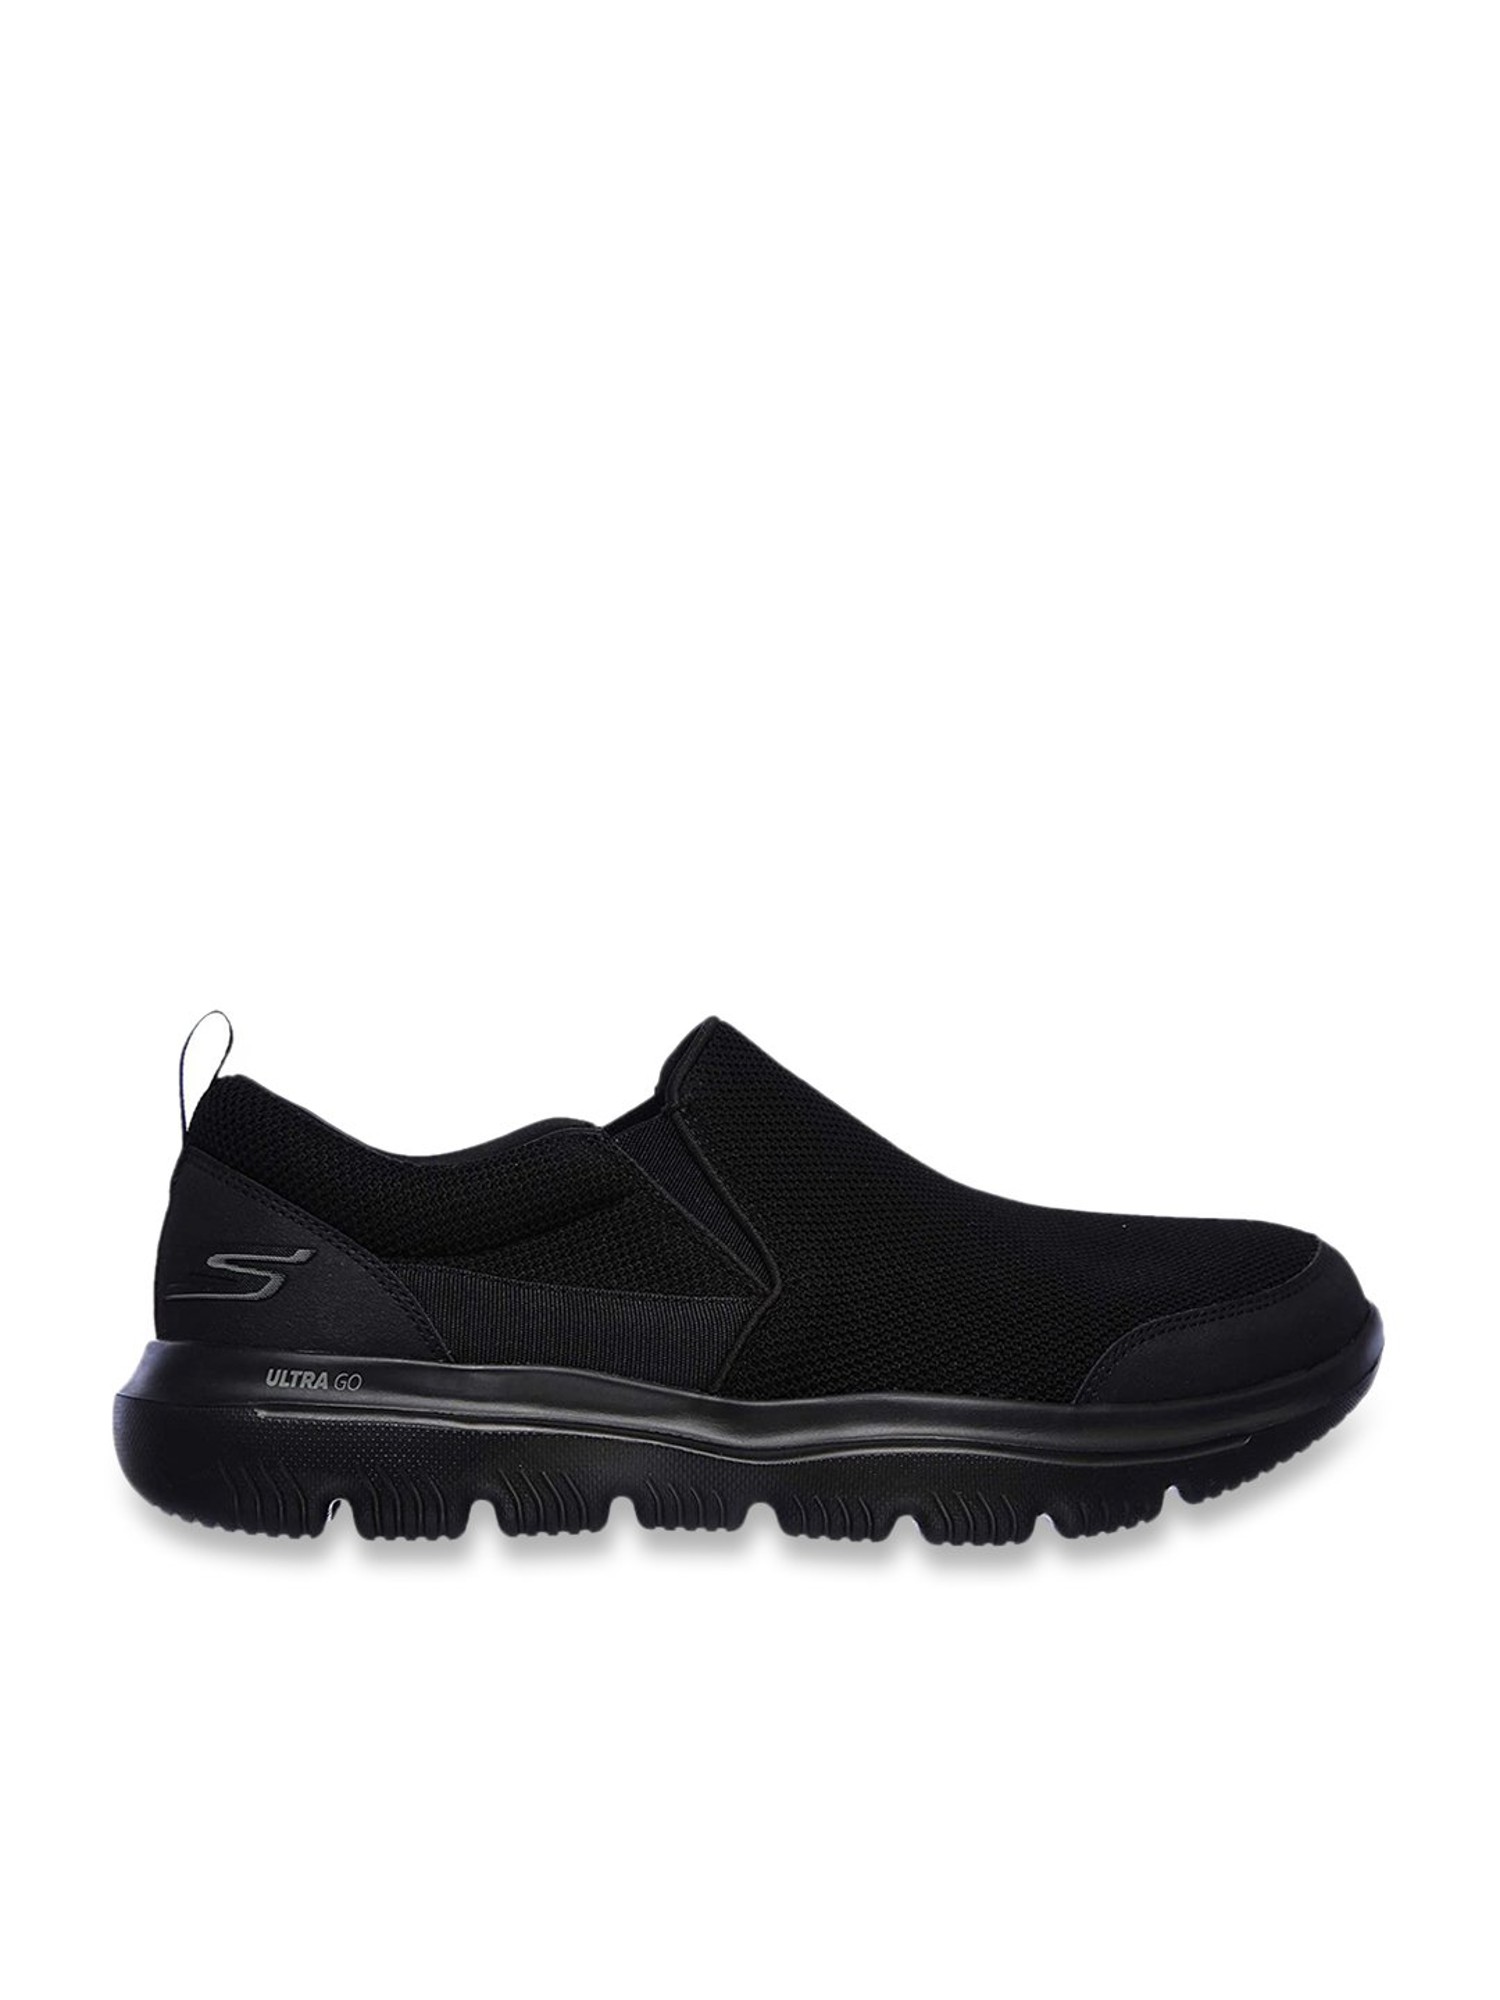 Skechers Men's GO WALK EVOLUTION ULTRA SPLIN Core Black Walking Shoes ...